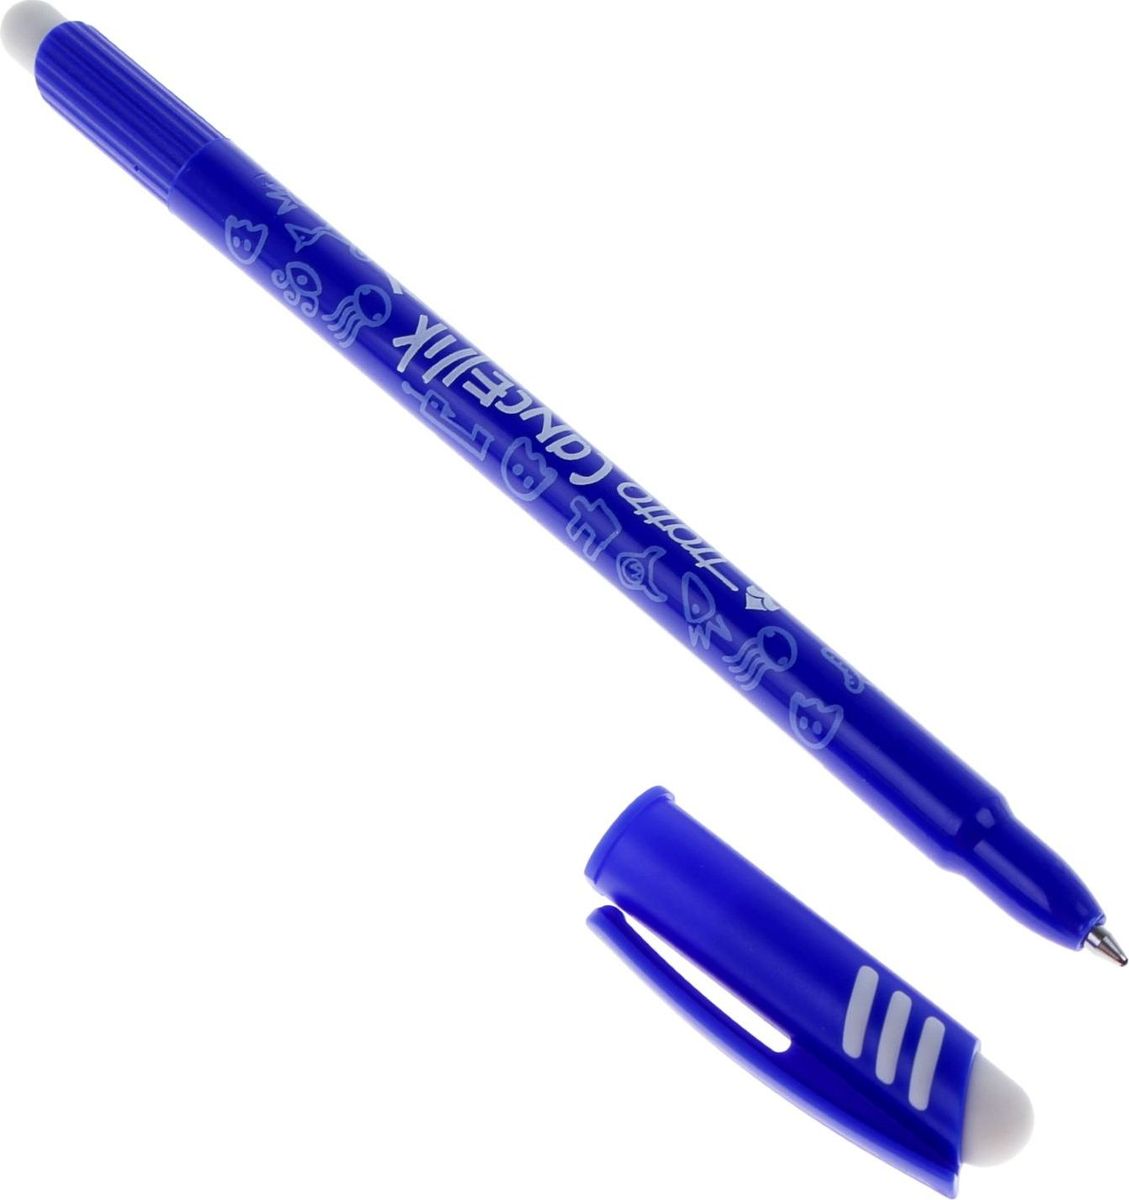 Ручка синяя красивая. Ручка шариковая tratto Cancellik "пиши-стирай" синяя 826101. Ручка самостирающаяся шариковая. Tratto Cancellik шариковая ручка "пиши-стирай", синяя, упаковка по 12 шт. Арт.826101. Ручка со стеркой которая стирает чернила.